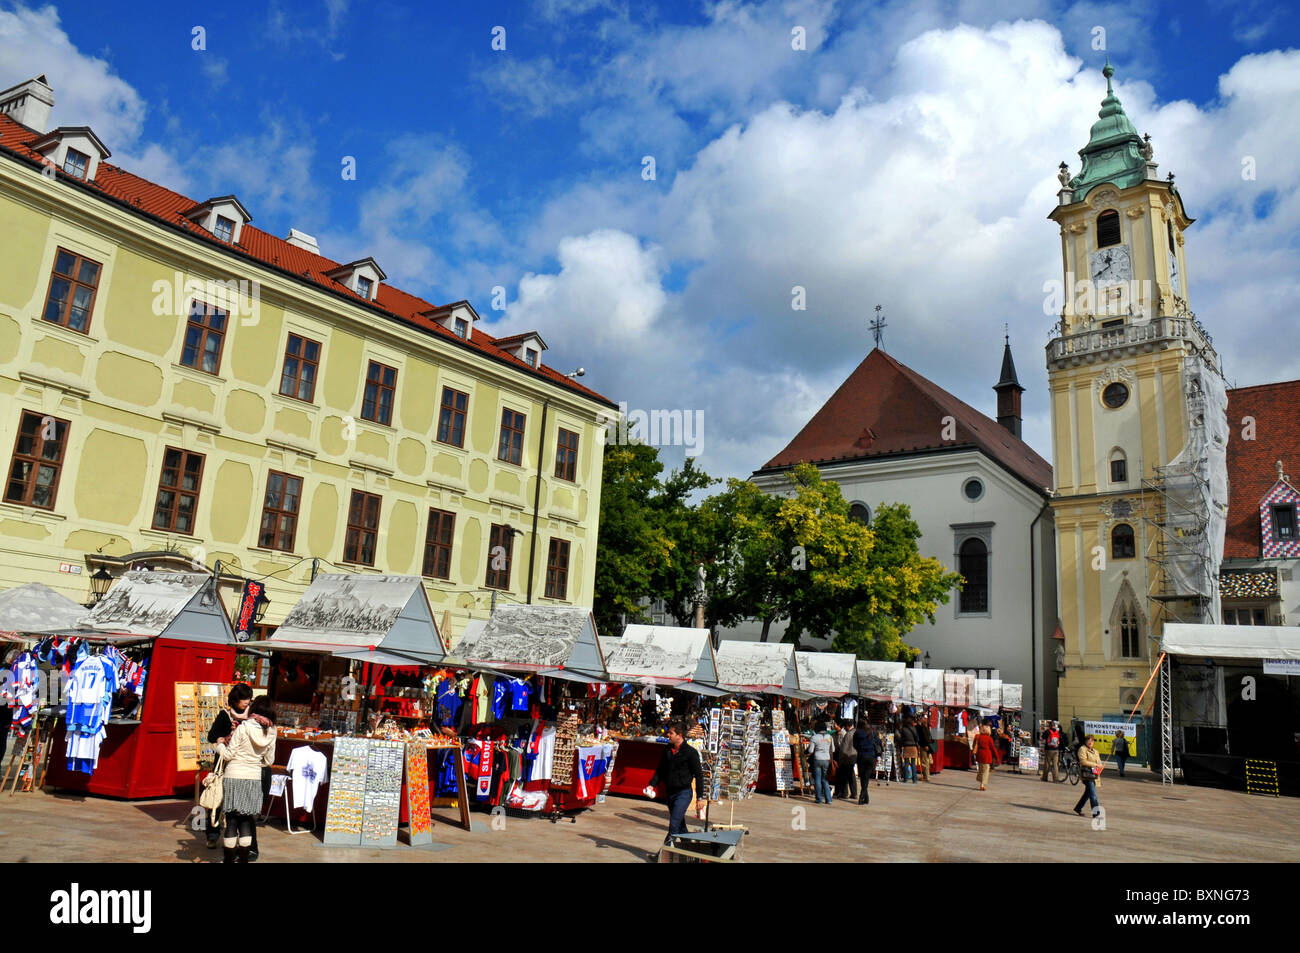 Piazza principale, Hlavni namesti, Bratislava città vecchia, Slovacchia, Europa Foto Stock